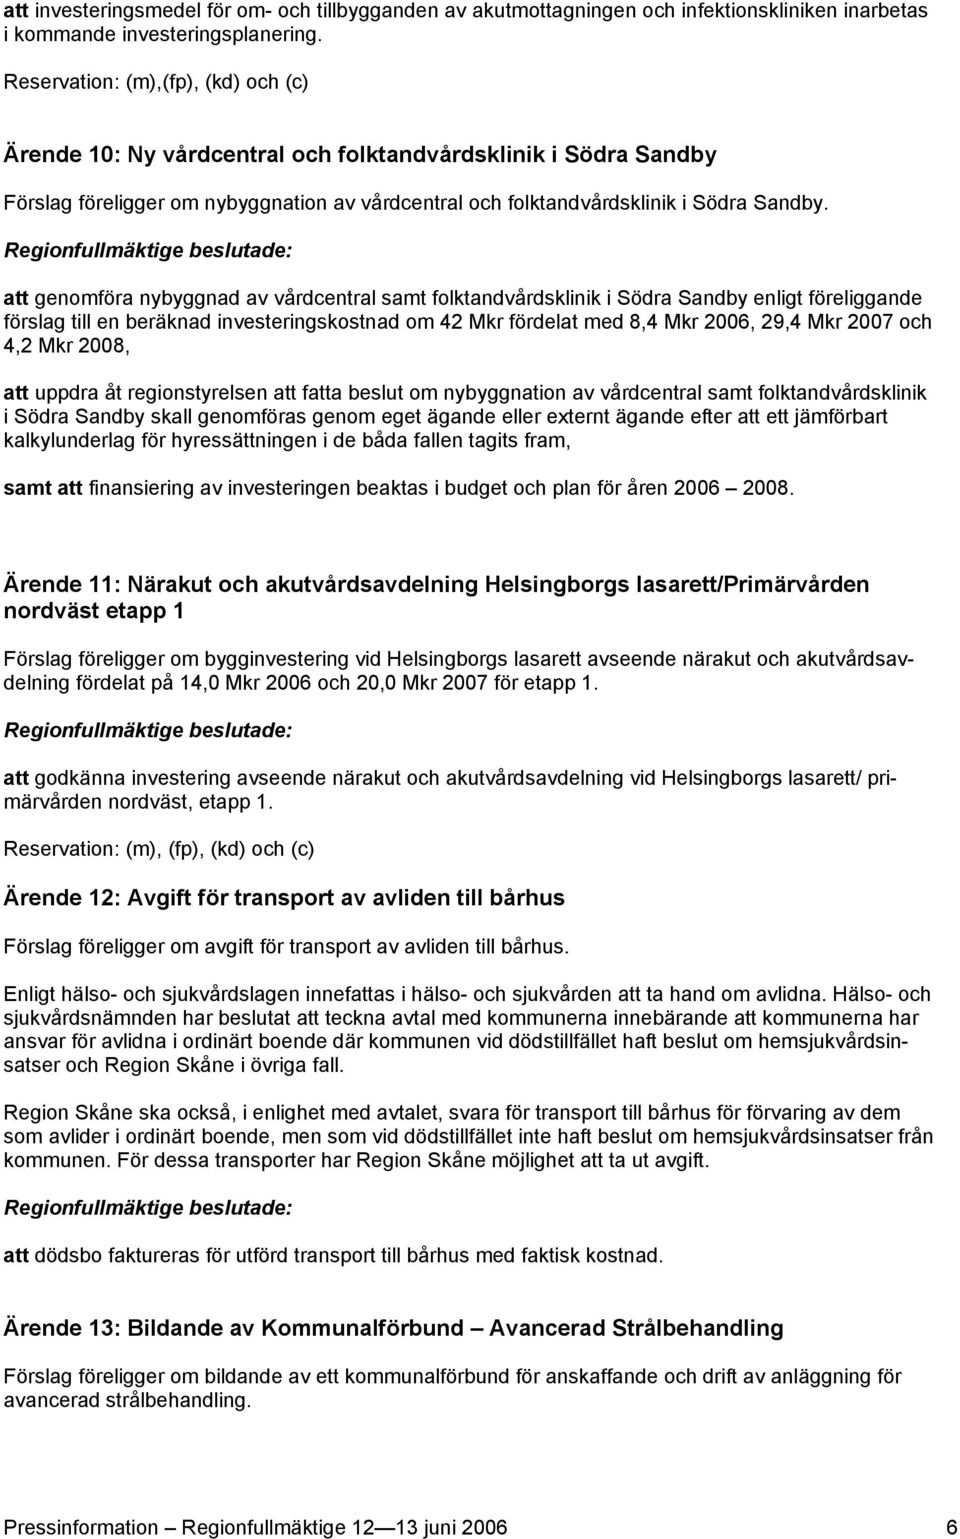 att genomföra nybyggnad av vårdcentral samt folktandvårdsklinik i Södra Sandby enligt föreliggande förslag till en beräknad investeringskostnad om 42 Mkr fördelat med 8,4 Mkr 2006, 29,4 Mkr 2007 och